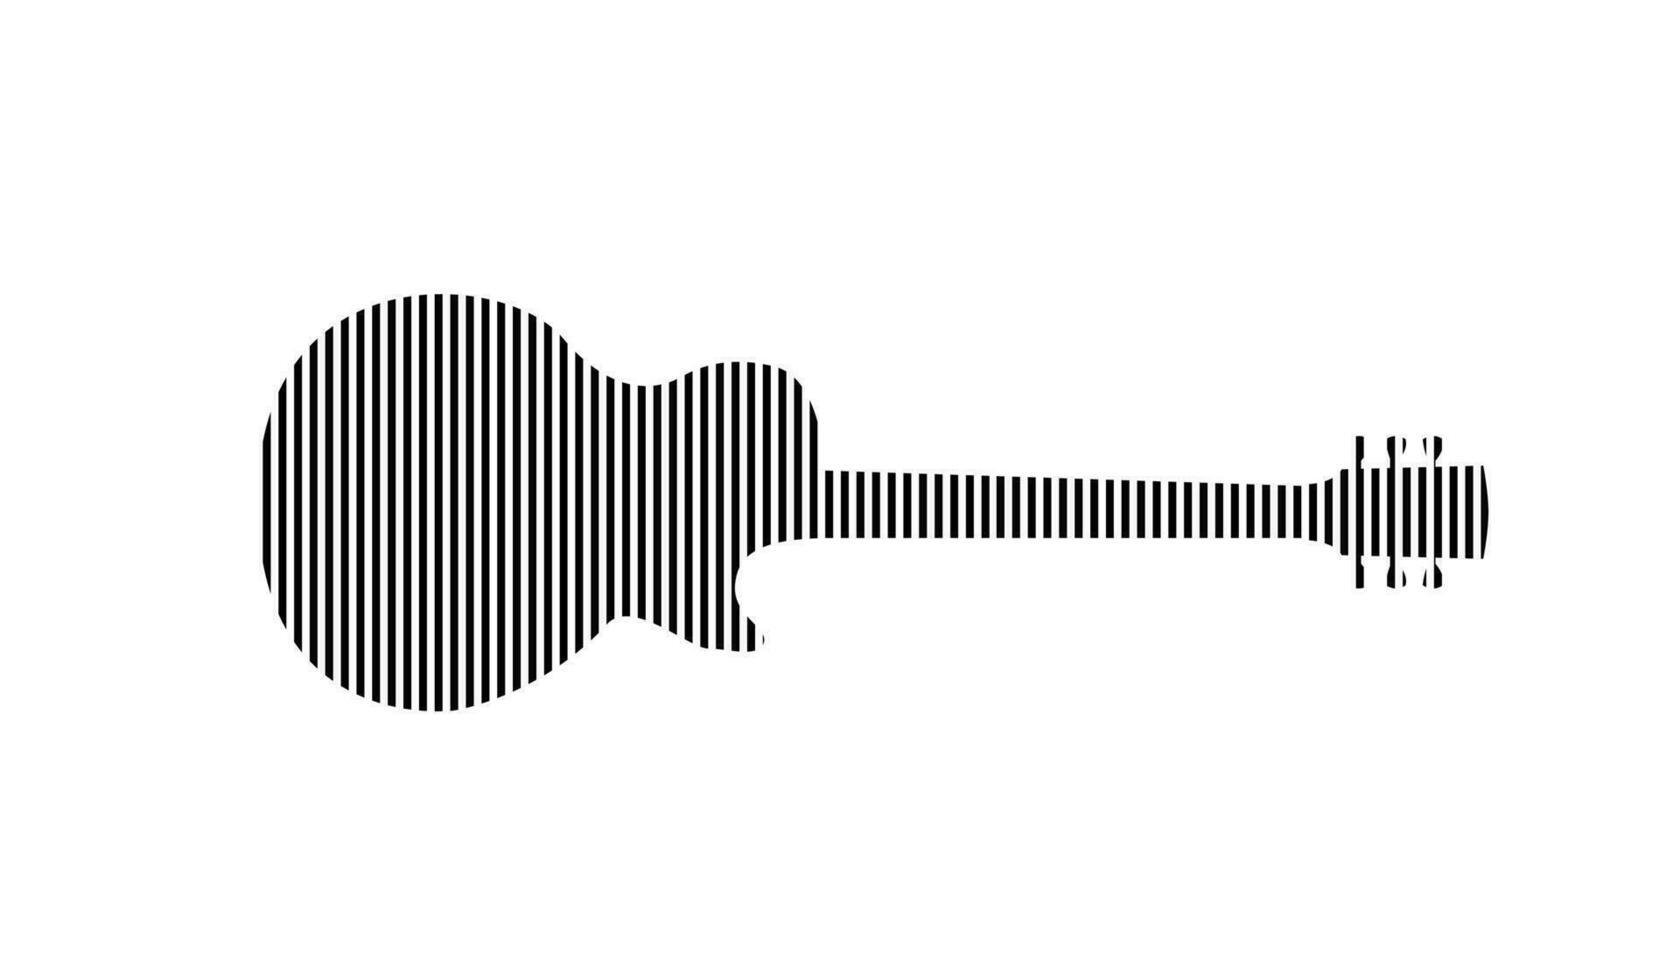 Electric guitar shape , line pattern vector design, illustration.